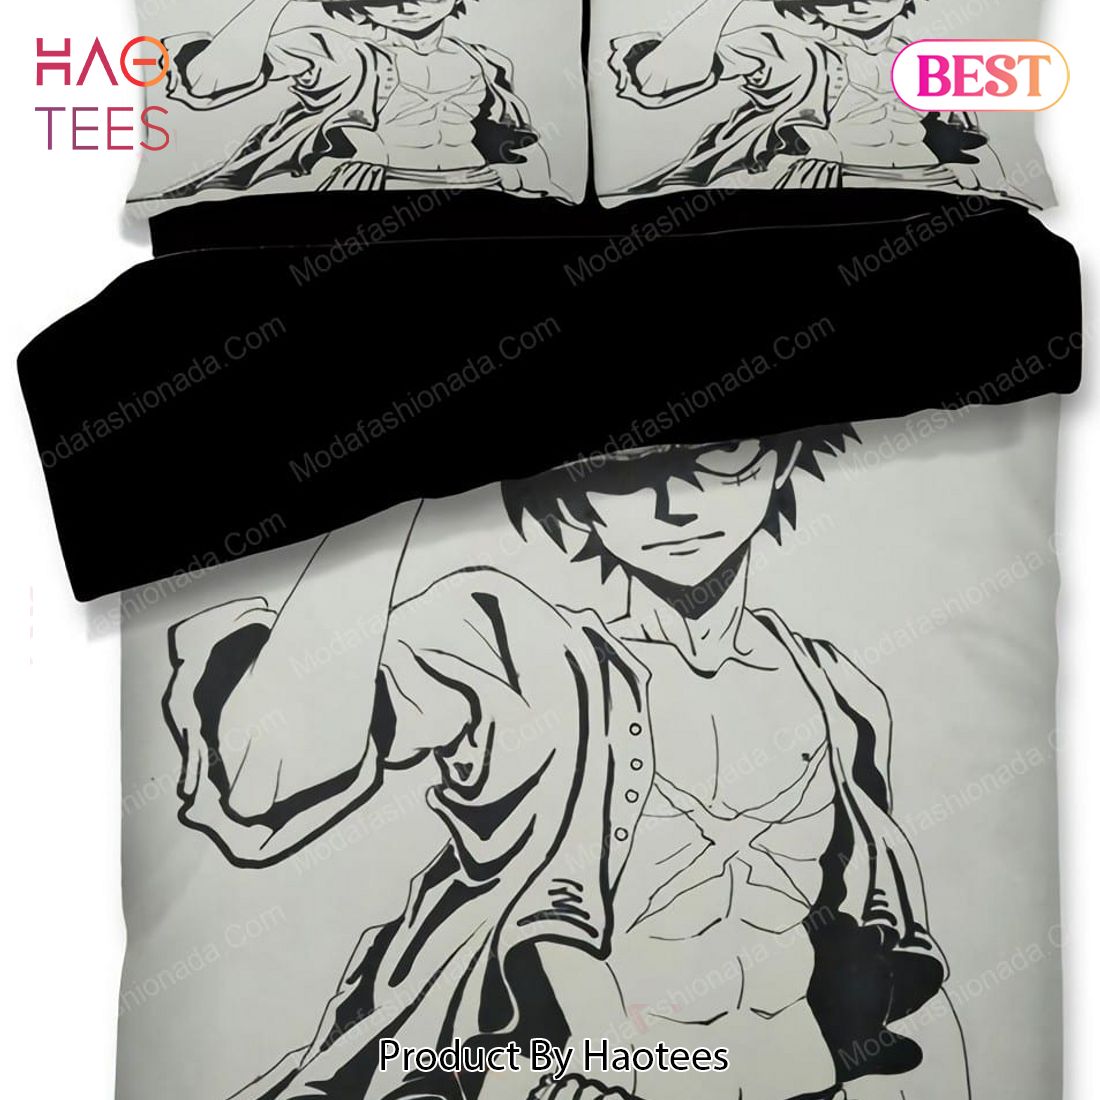 Buy Japanese style One Piece Anime 66 Bedding Sets Bed Sets, Bedroom Sets, Comforter Sets, Duvet Cover, Bedspread